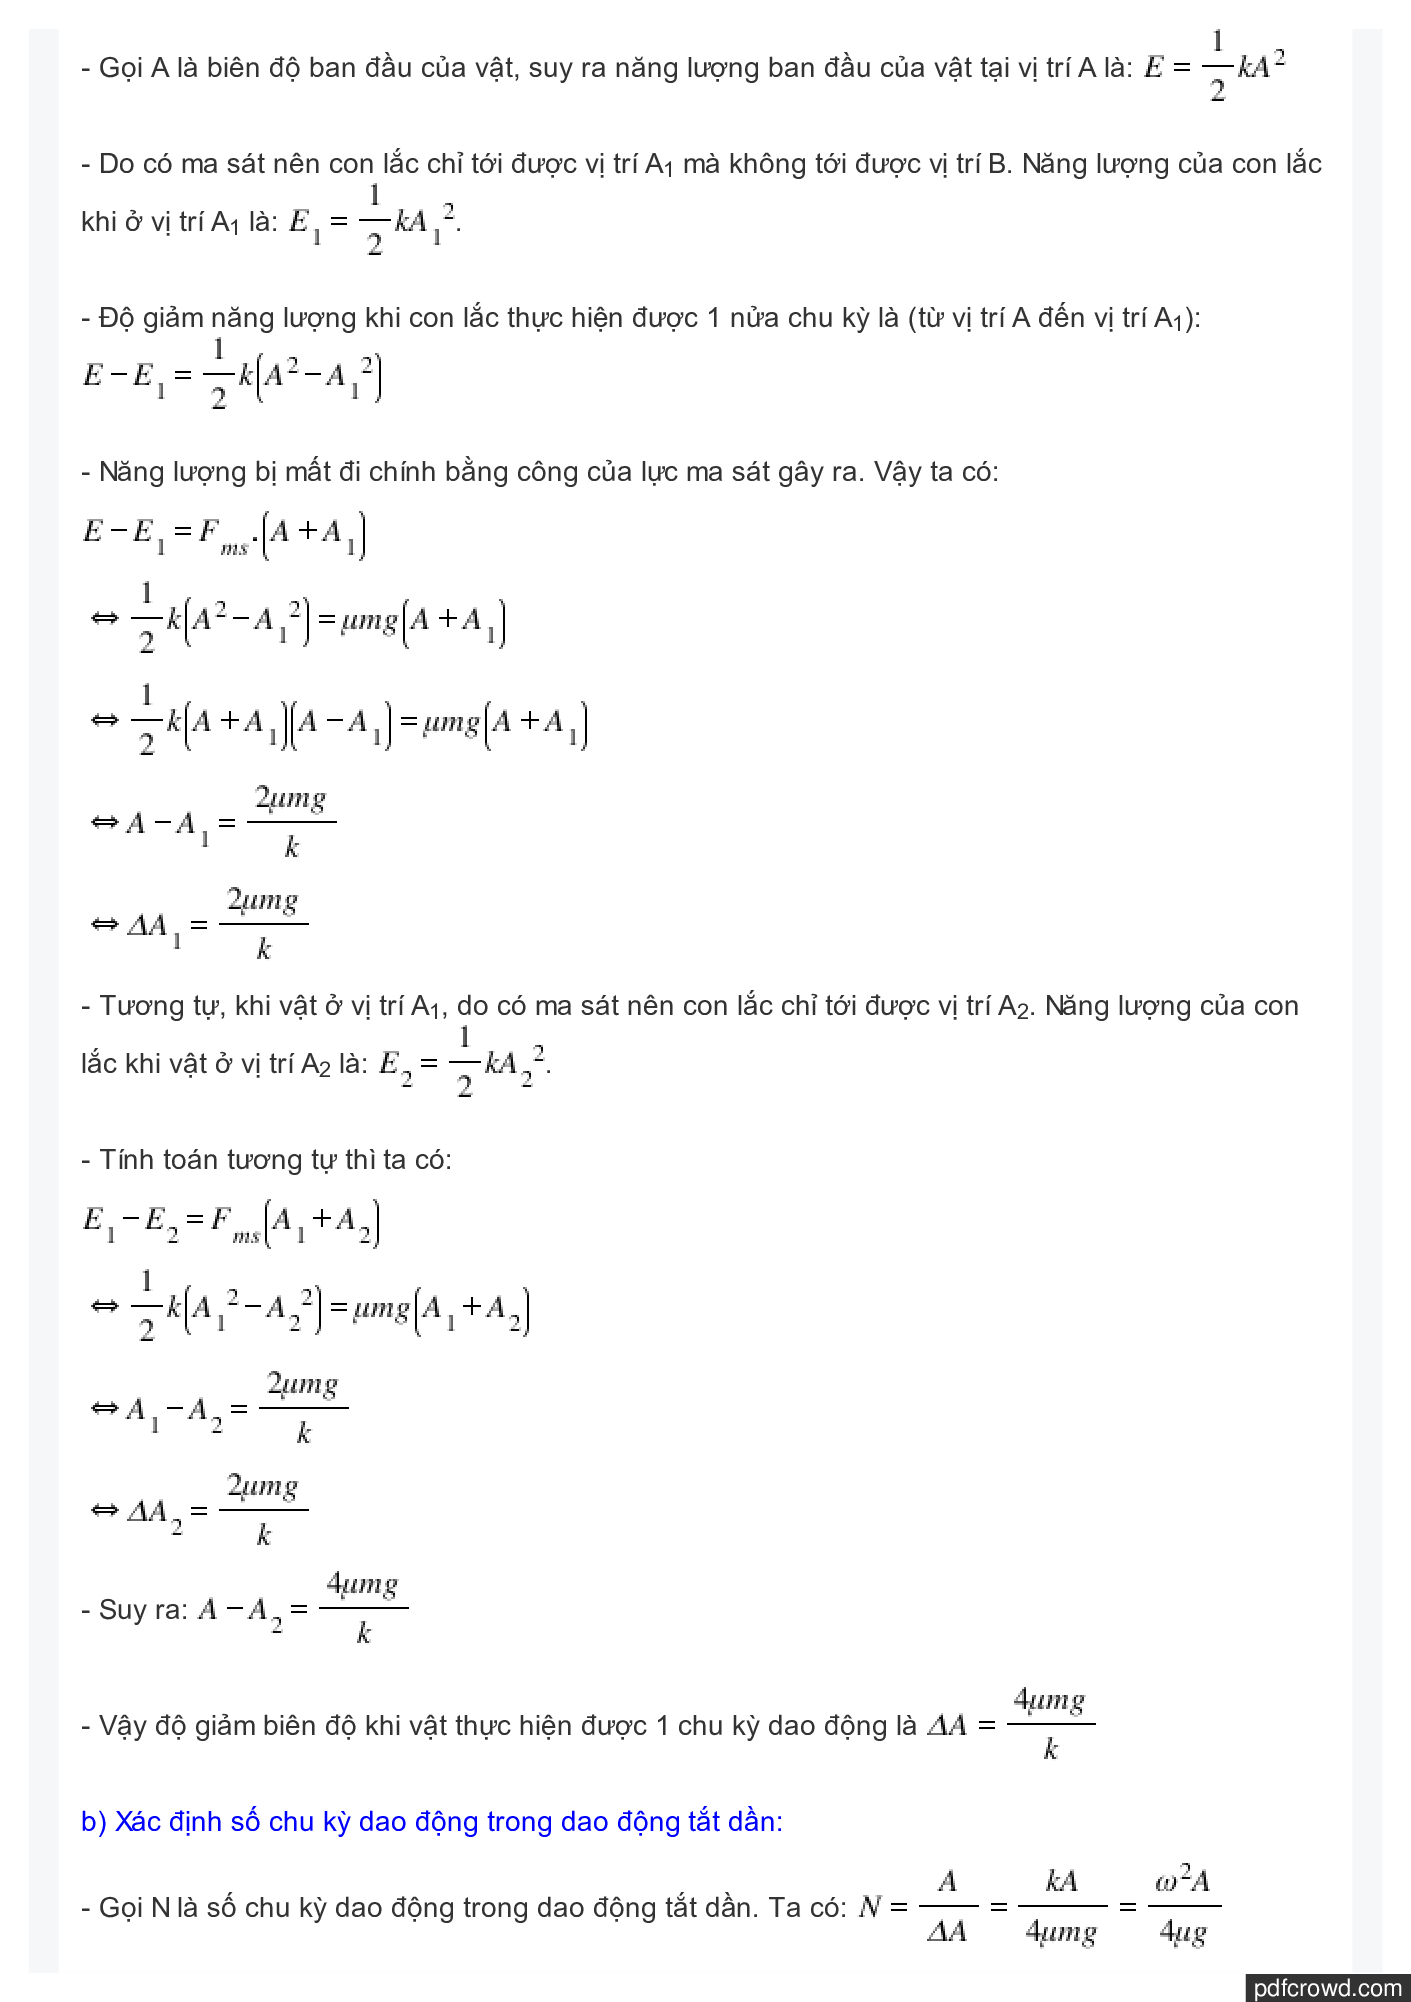 Phương pháp giải 7 dạng toán Dao động tắt dần (trang 2)